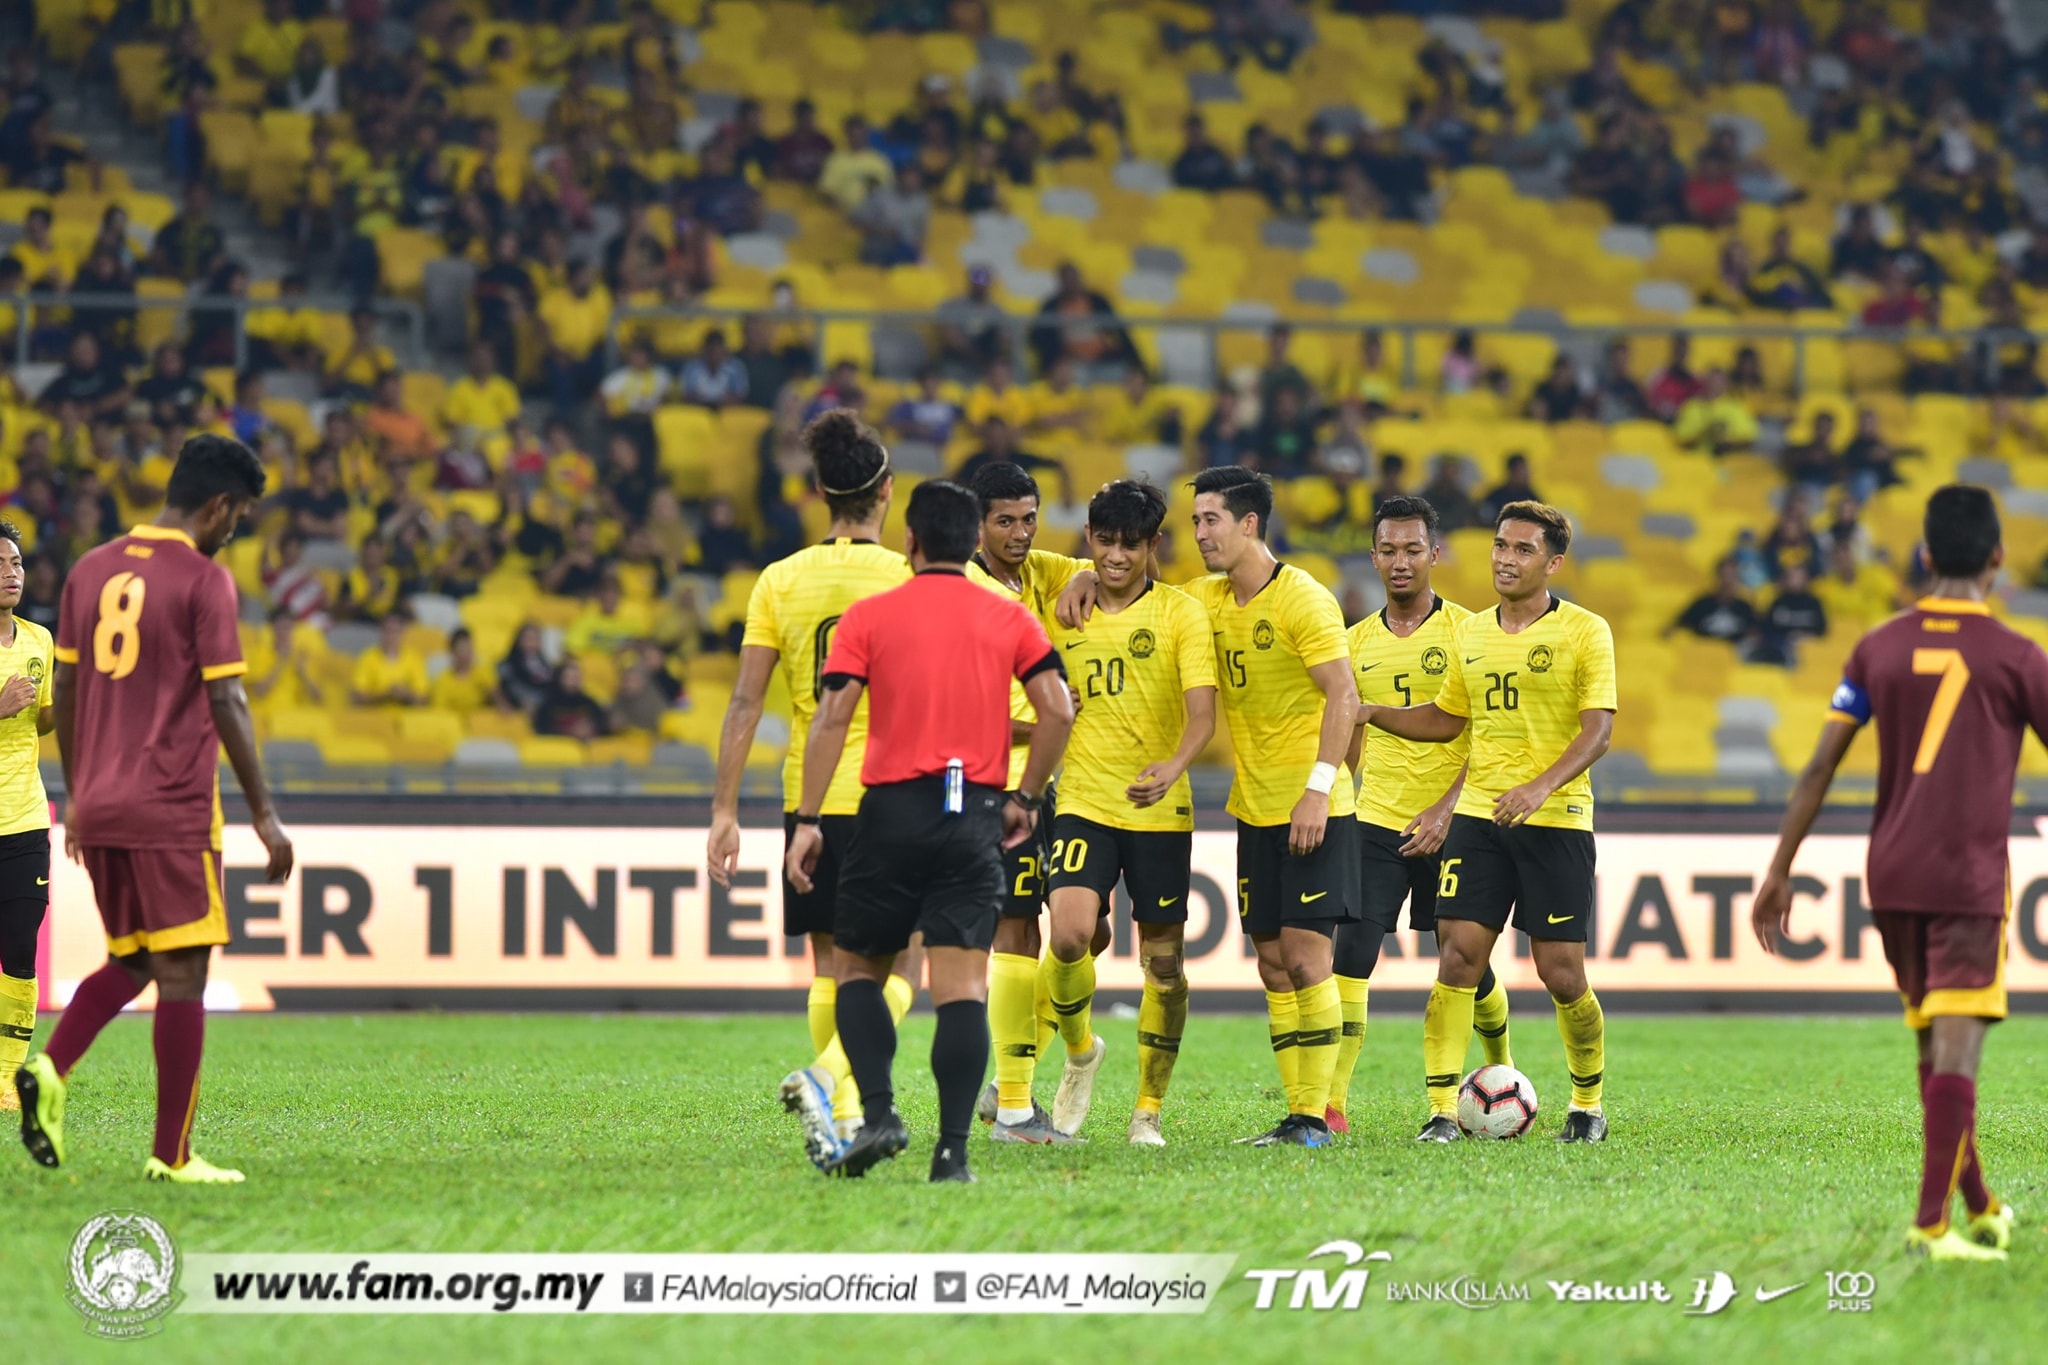 Các trụ cột của đội tuyển Malaysia như trung vệ Shahrul Saad, tiền vệ Safawi Rasid, Syafiq Ahmad hay tiền đạo Idlan Talaha đều có tên trong danh sách và hiện đang có phong độ cao.